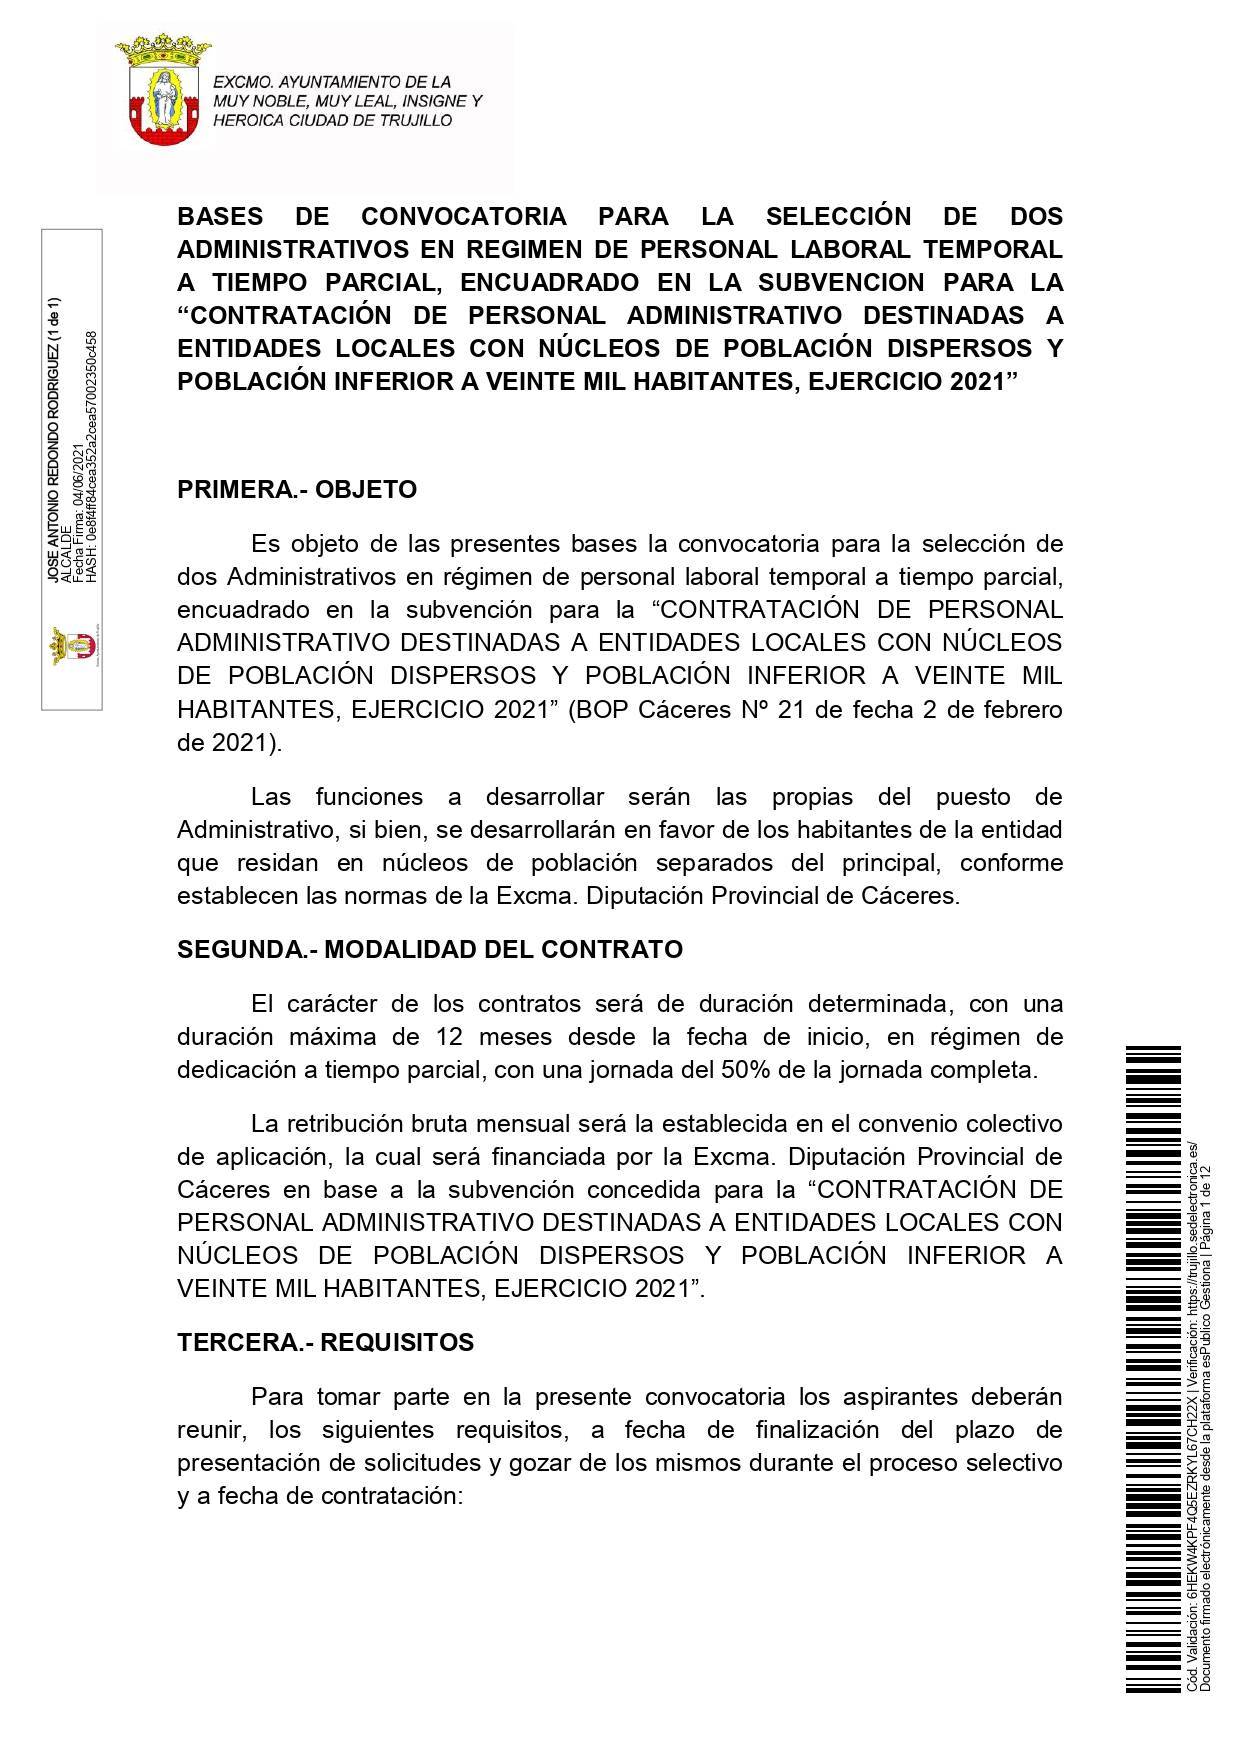 2 administrativos (2021) - Trujillo (Cáceres) 1